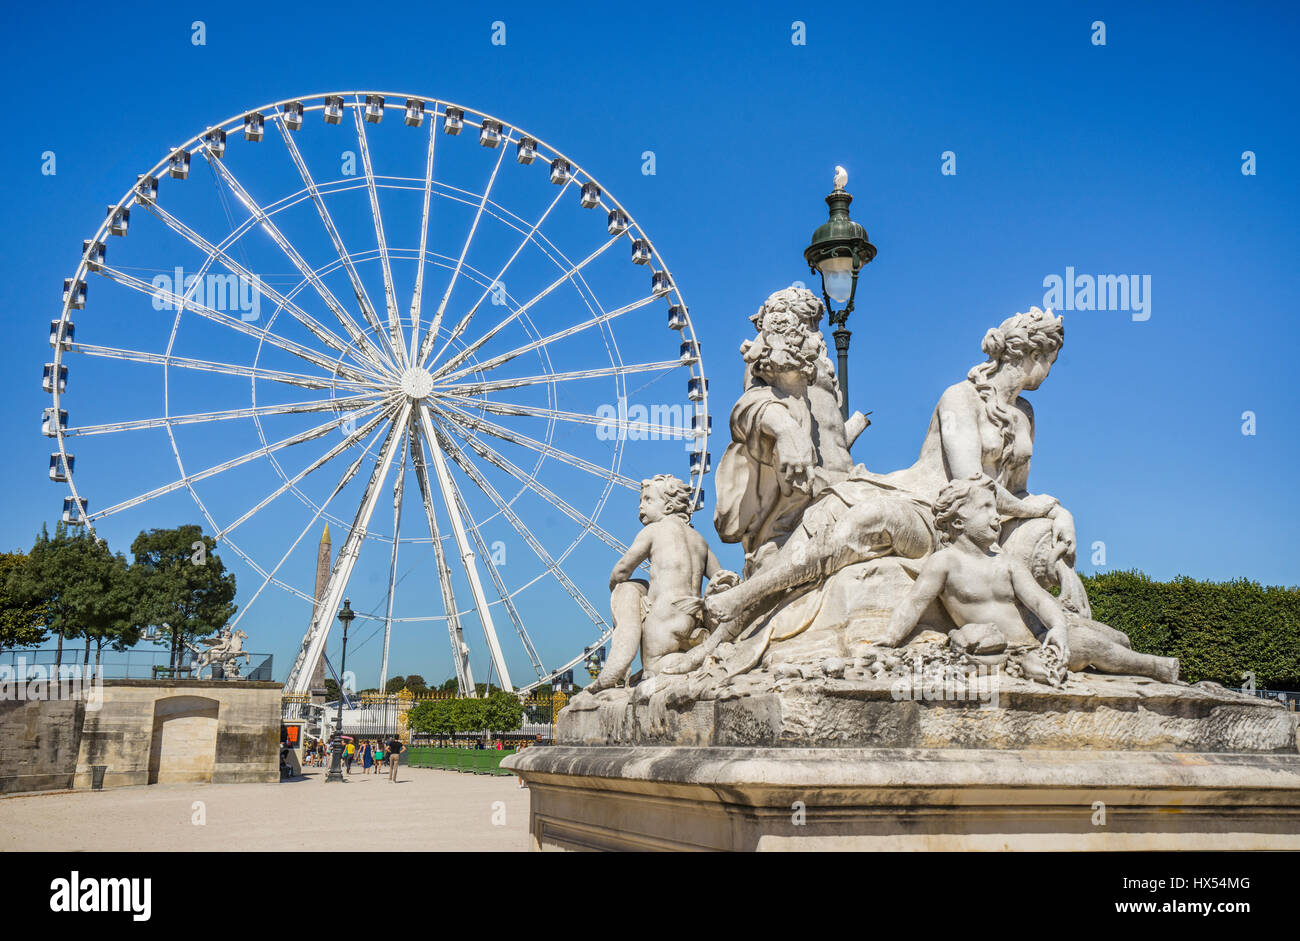 France, Paris, statuaire classique au Jardin des Tuileries dans le contexte du Grand Carousel Ferries Wheel Banque D'Images